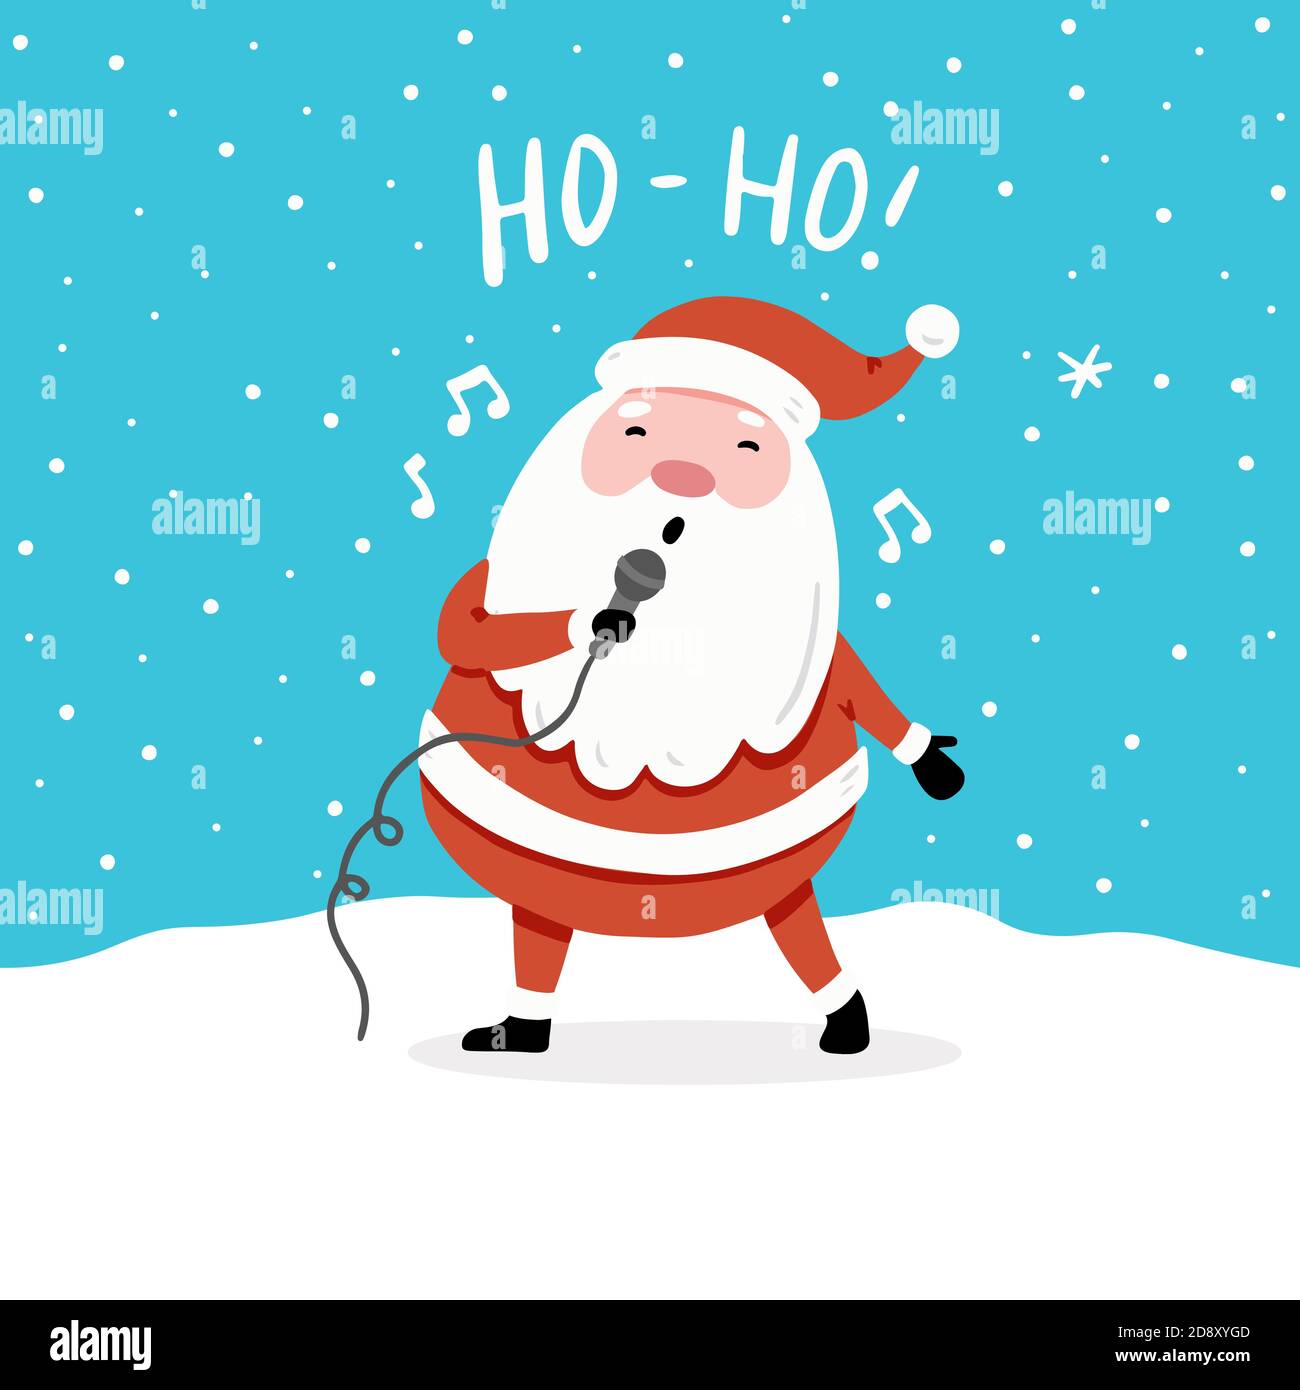 Biglietto d'auguri natalizio con cartoni animati che cantano il personaggio  di Babbo Natale, elementi di design disegnati a mano, scritta qoute ho-ho  Immagine e Vettoriale - Alamy